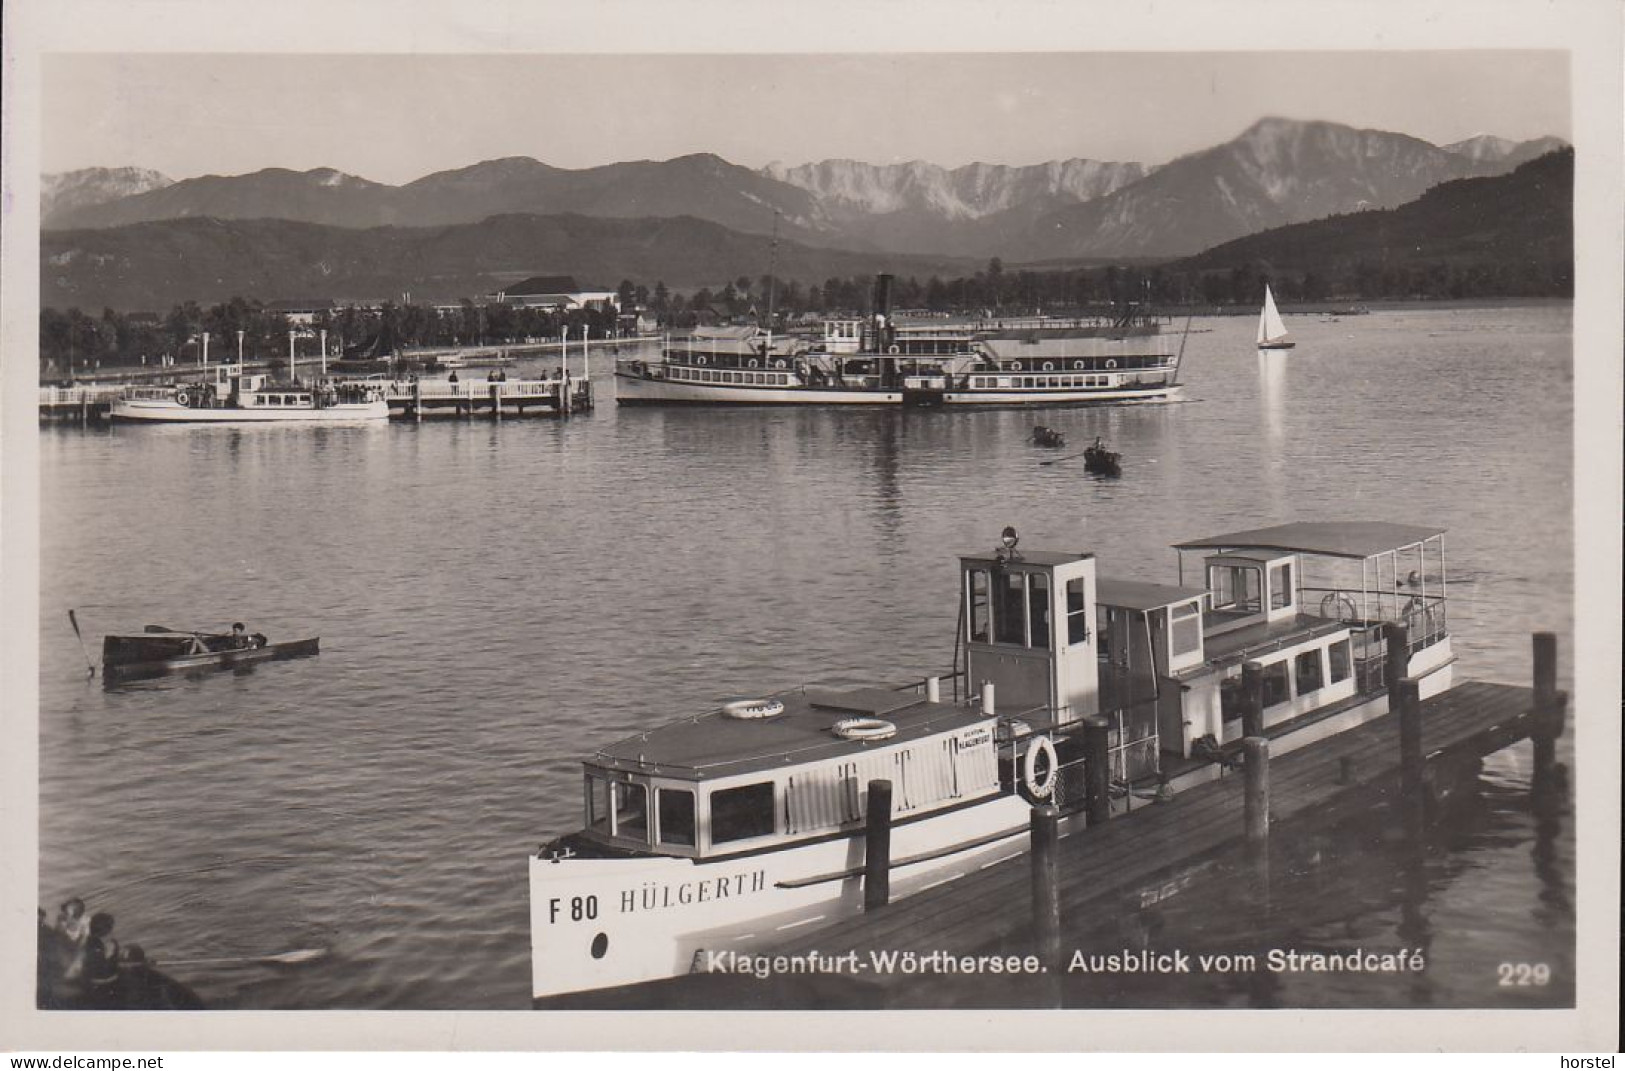 Austria - 9020 Klagenfurt - Ausblick Vom Strandcafe - Hafen - Dampfer "Hülgerth" - 1940 Gel. Stamp - Klagenfurt